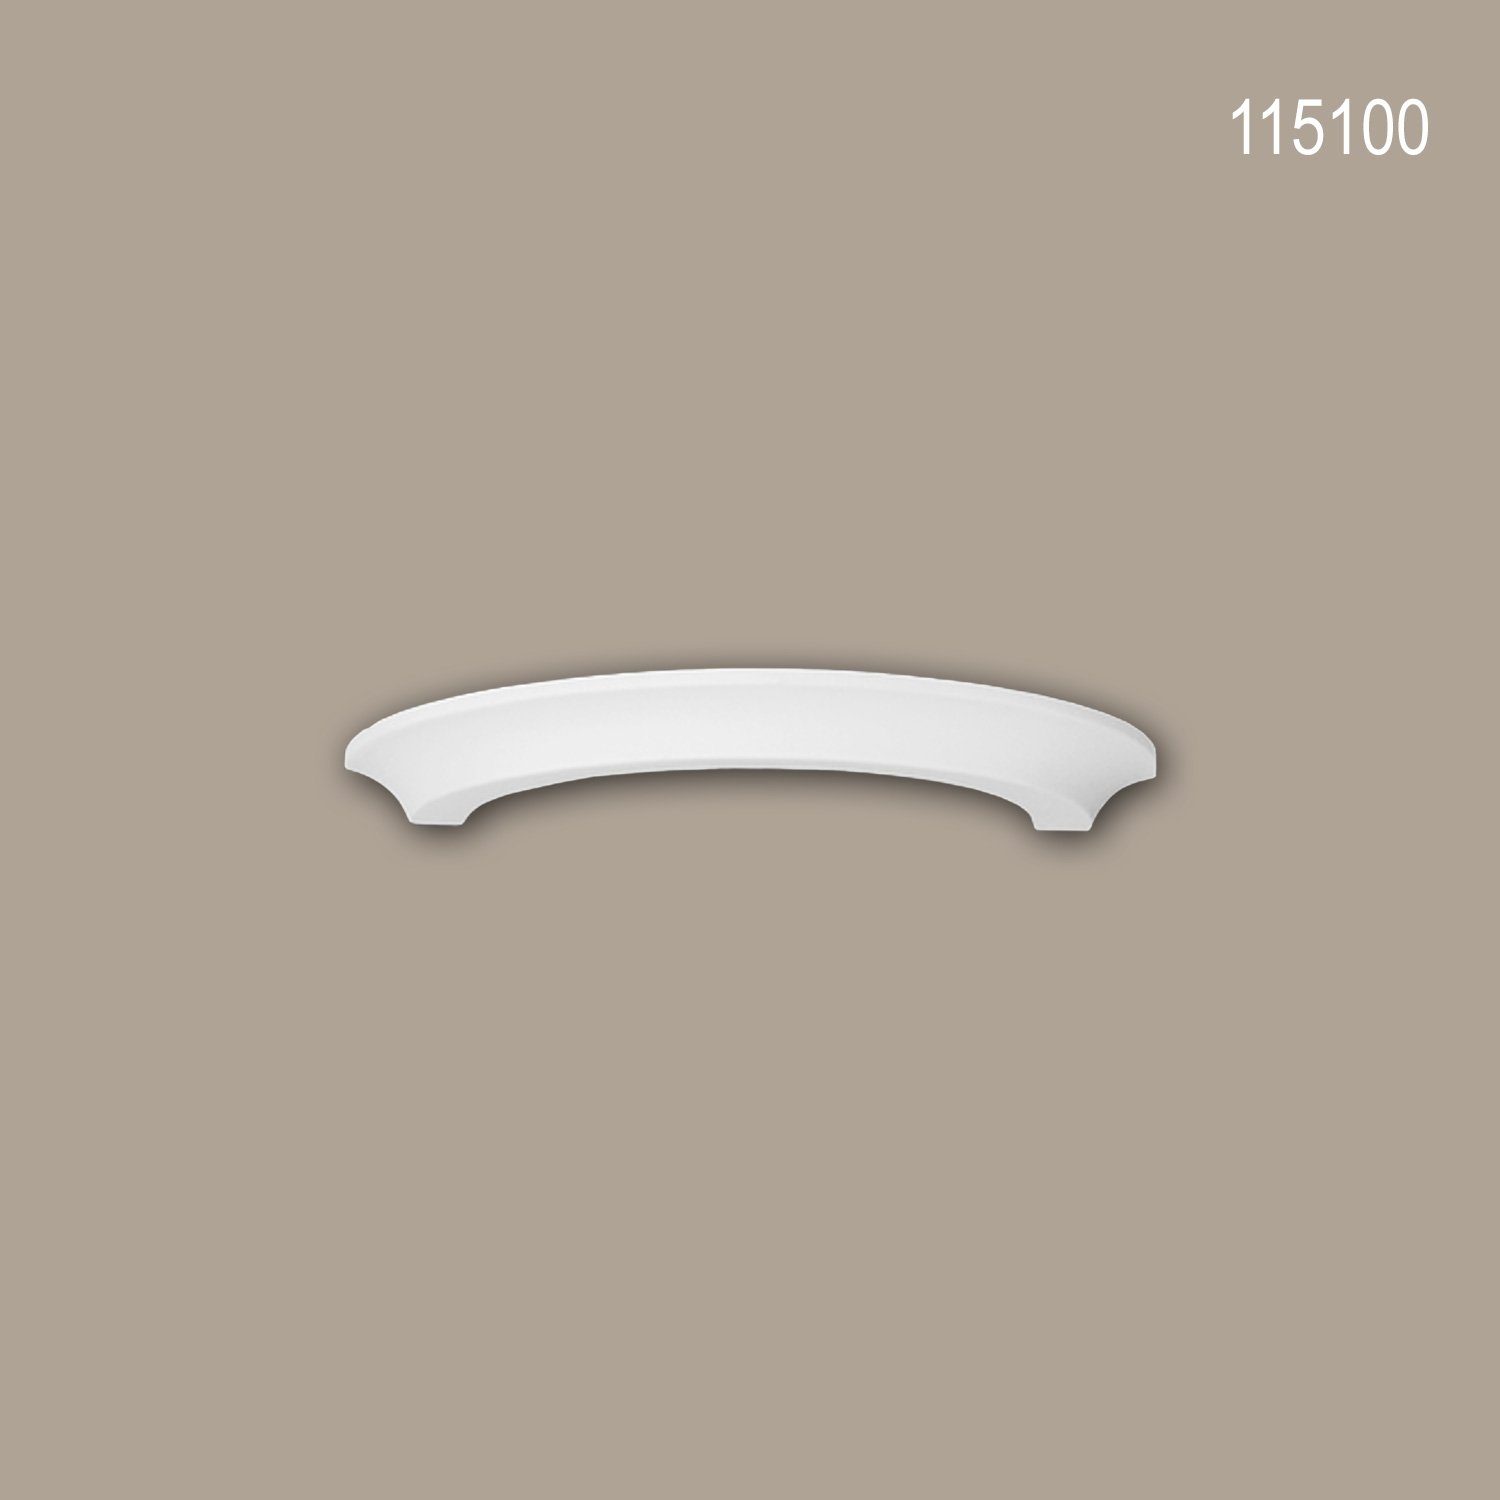 Profhome Wanddekoobjekt 115100 (Halbsäulen Ring, 1 St., Säule, Zierelement, Stucksäule, Dekosäule, Durchmesser 28 cm), weiß, vorgrundiert, Stil: Dorisch